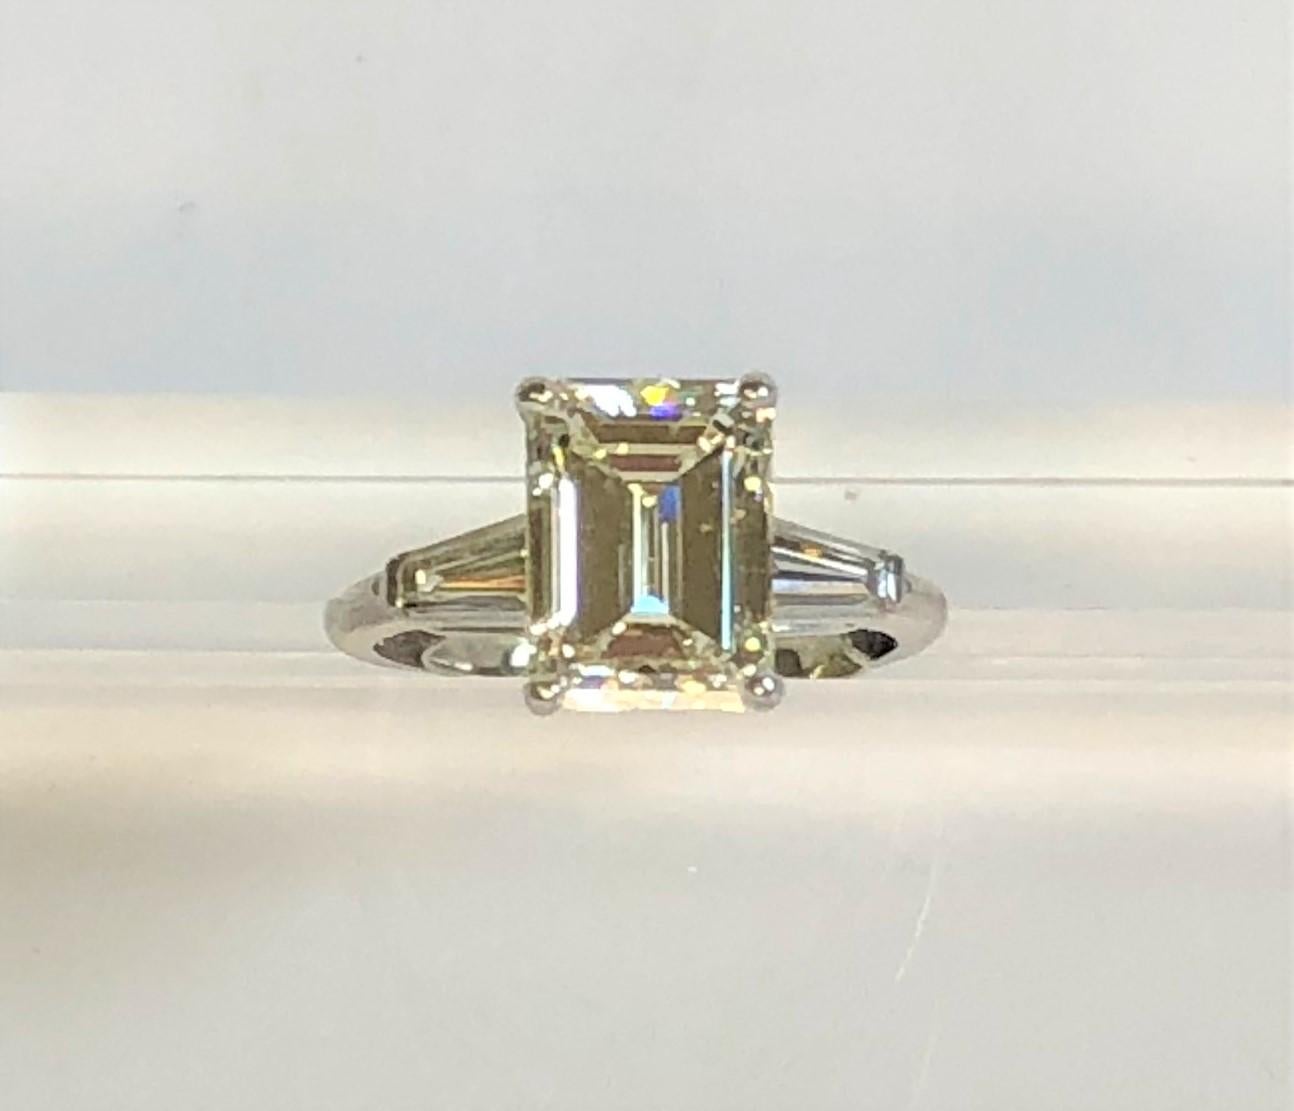 WOW cette bague est magnifique - Certifiée GIA !
Monture en platine à trois pierres avec un poids total de diamants d'environ 3,80 (estimation).
Fabriqué à la main avec le numéro de série 35007 à l'intérieur du bracelet
Diamant moyen de taille